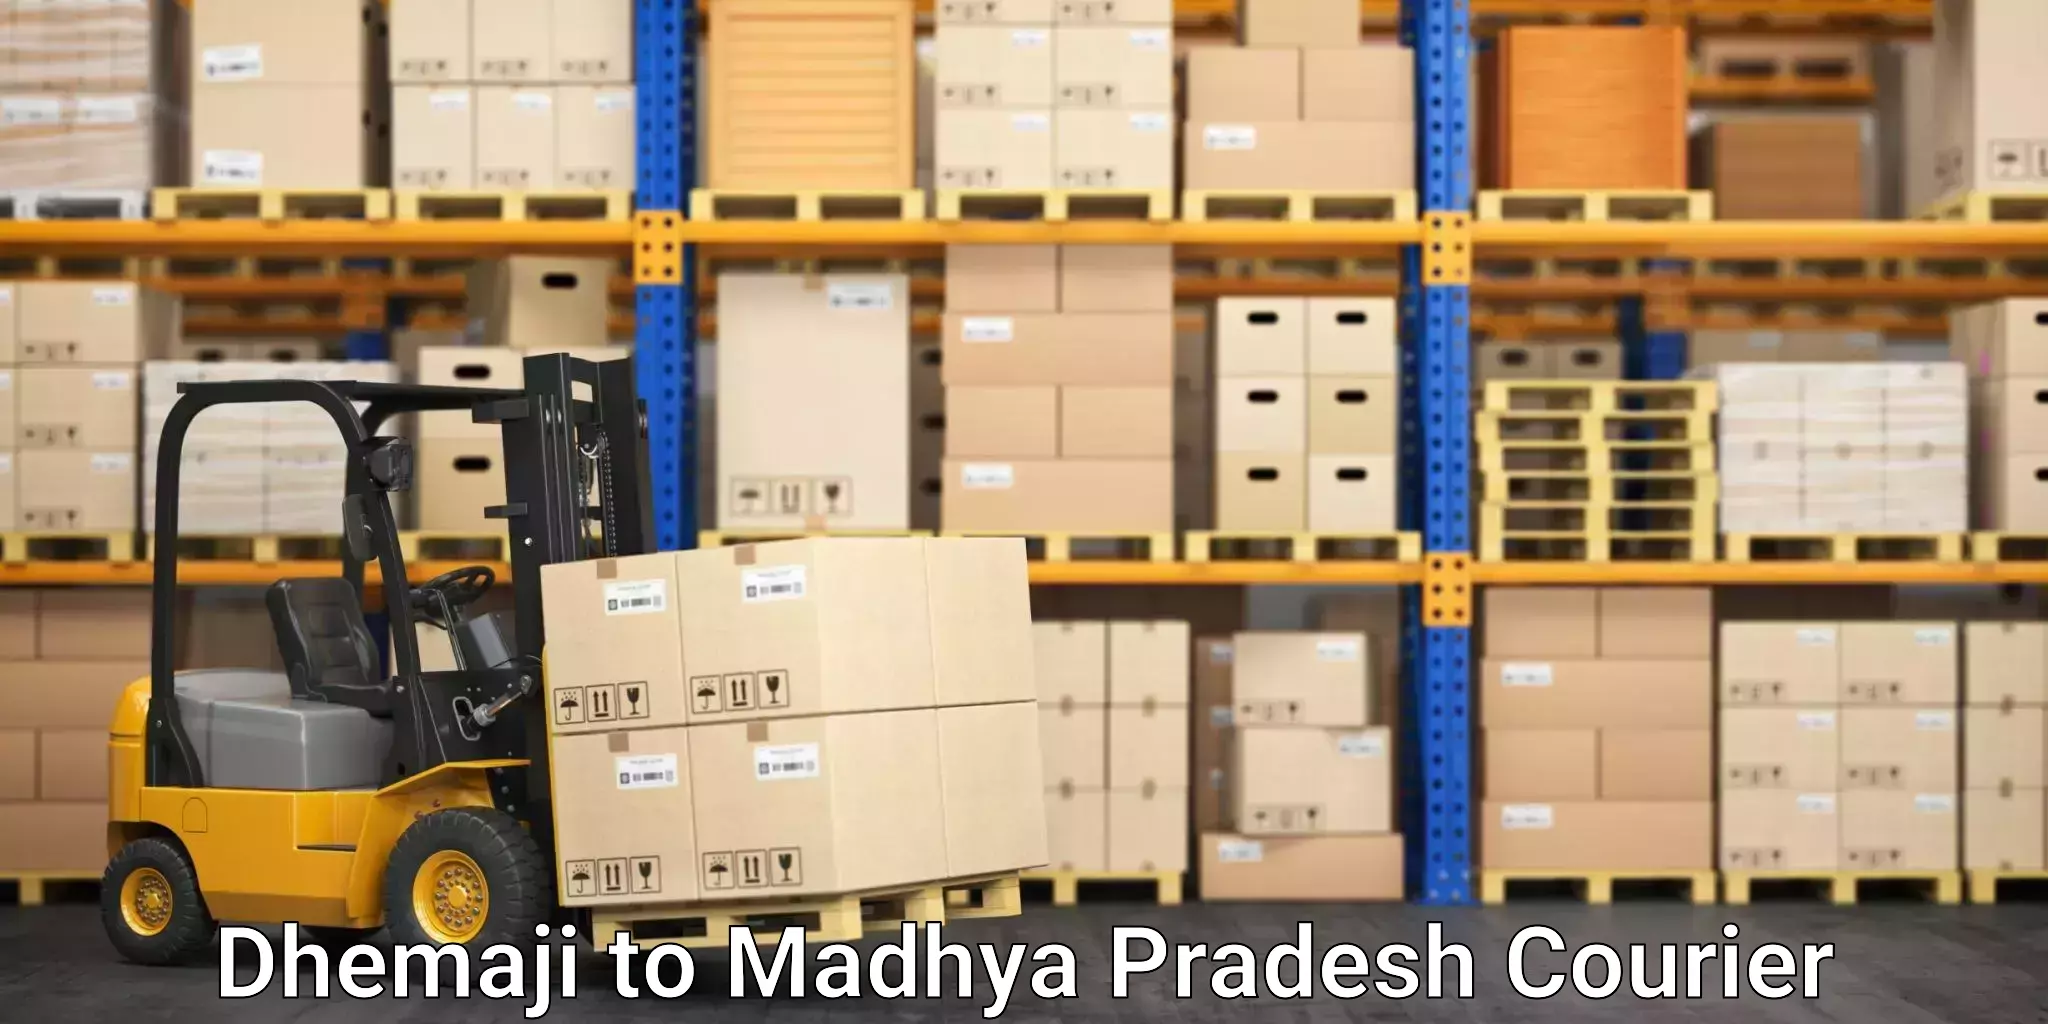 Multi-city courier Dhemaji to Madhya Pradesh